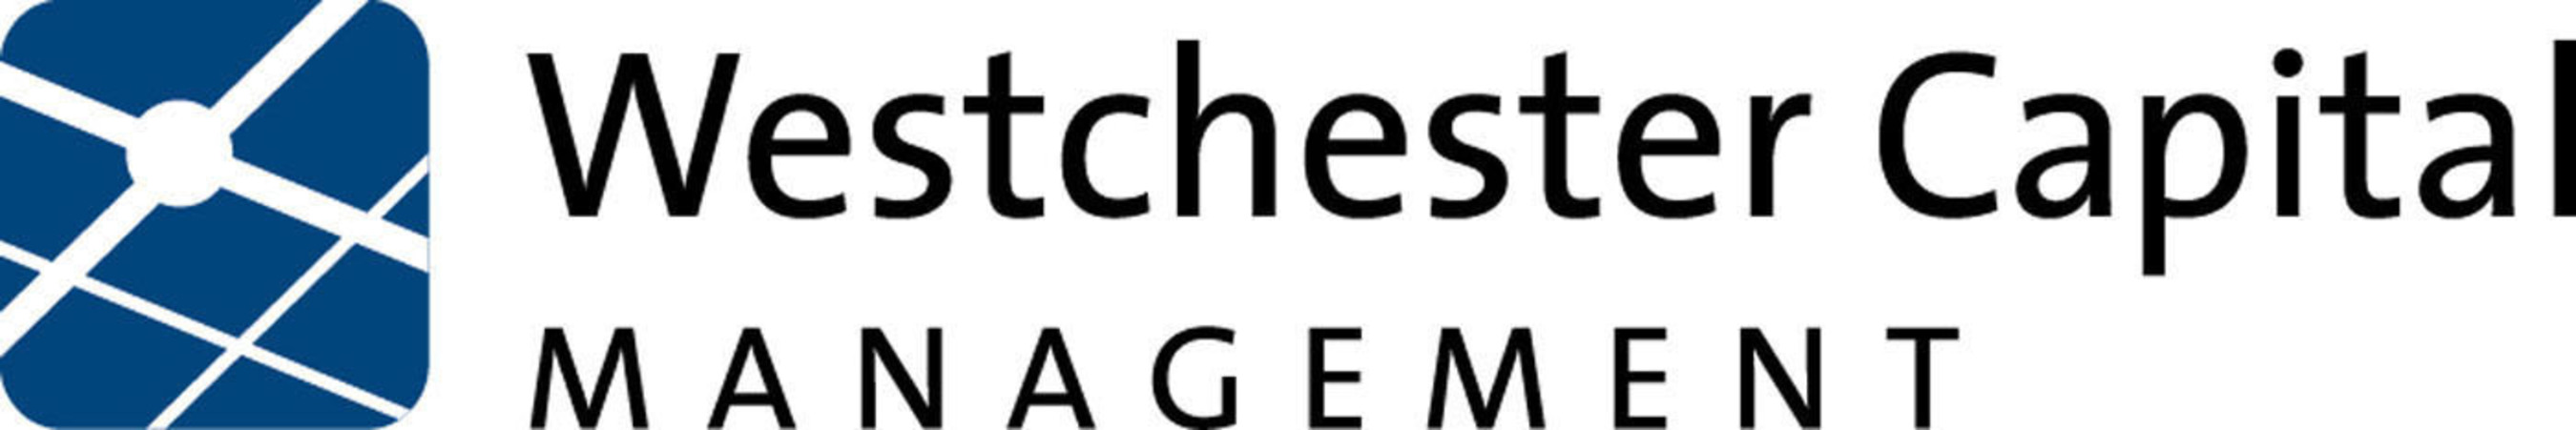 Westchester Capital Management